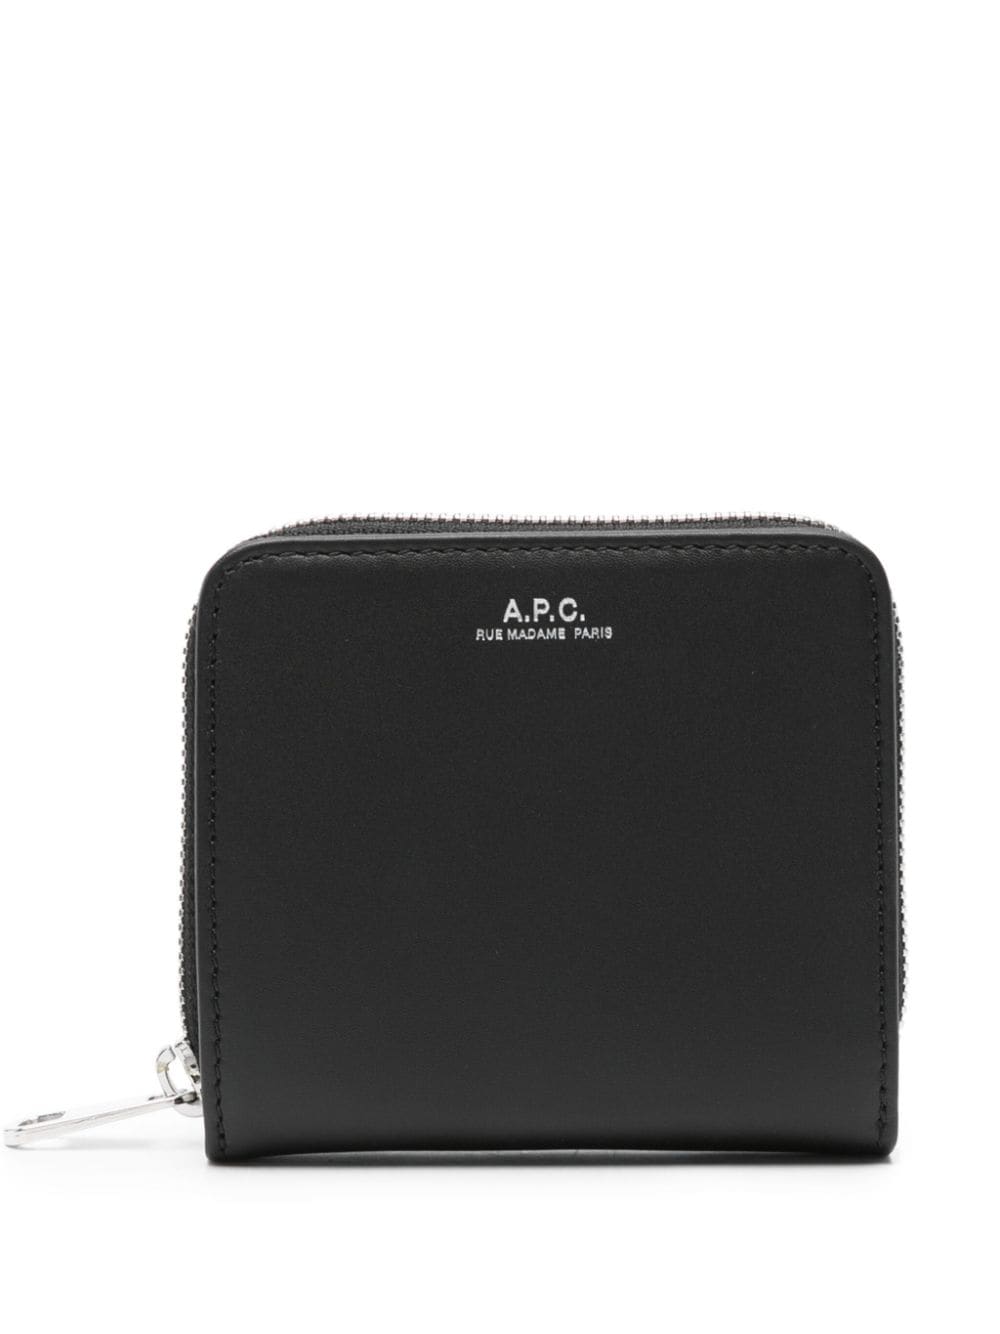 A.P.C. Emmanuelle compact leather wallet - Black von A.P.C.